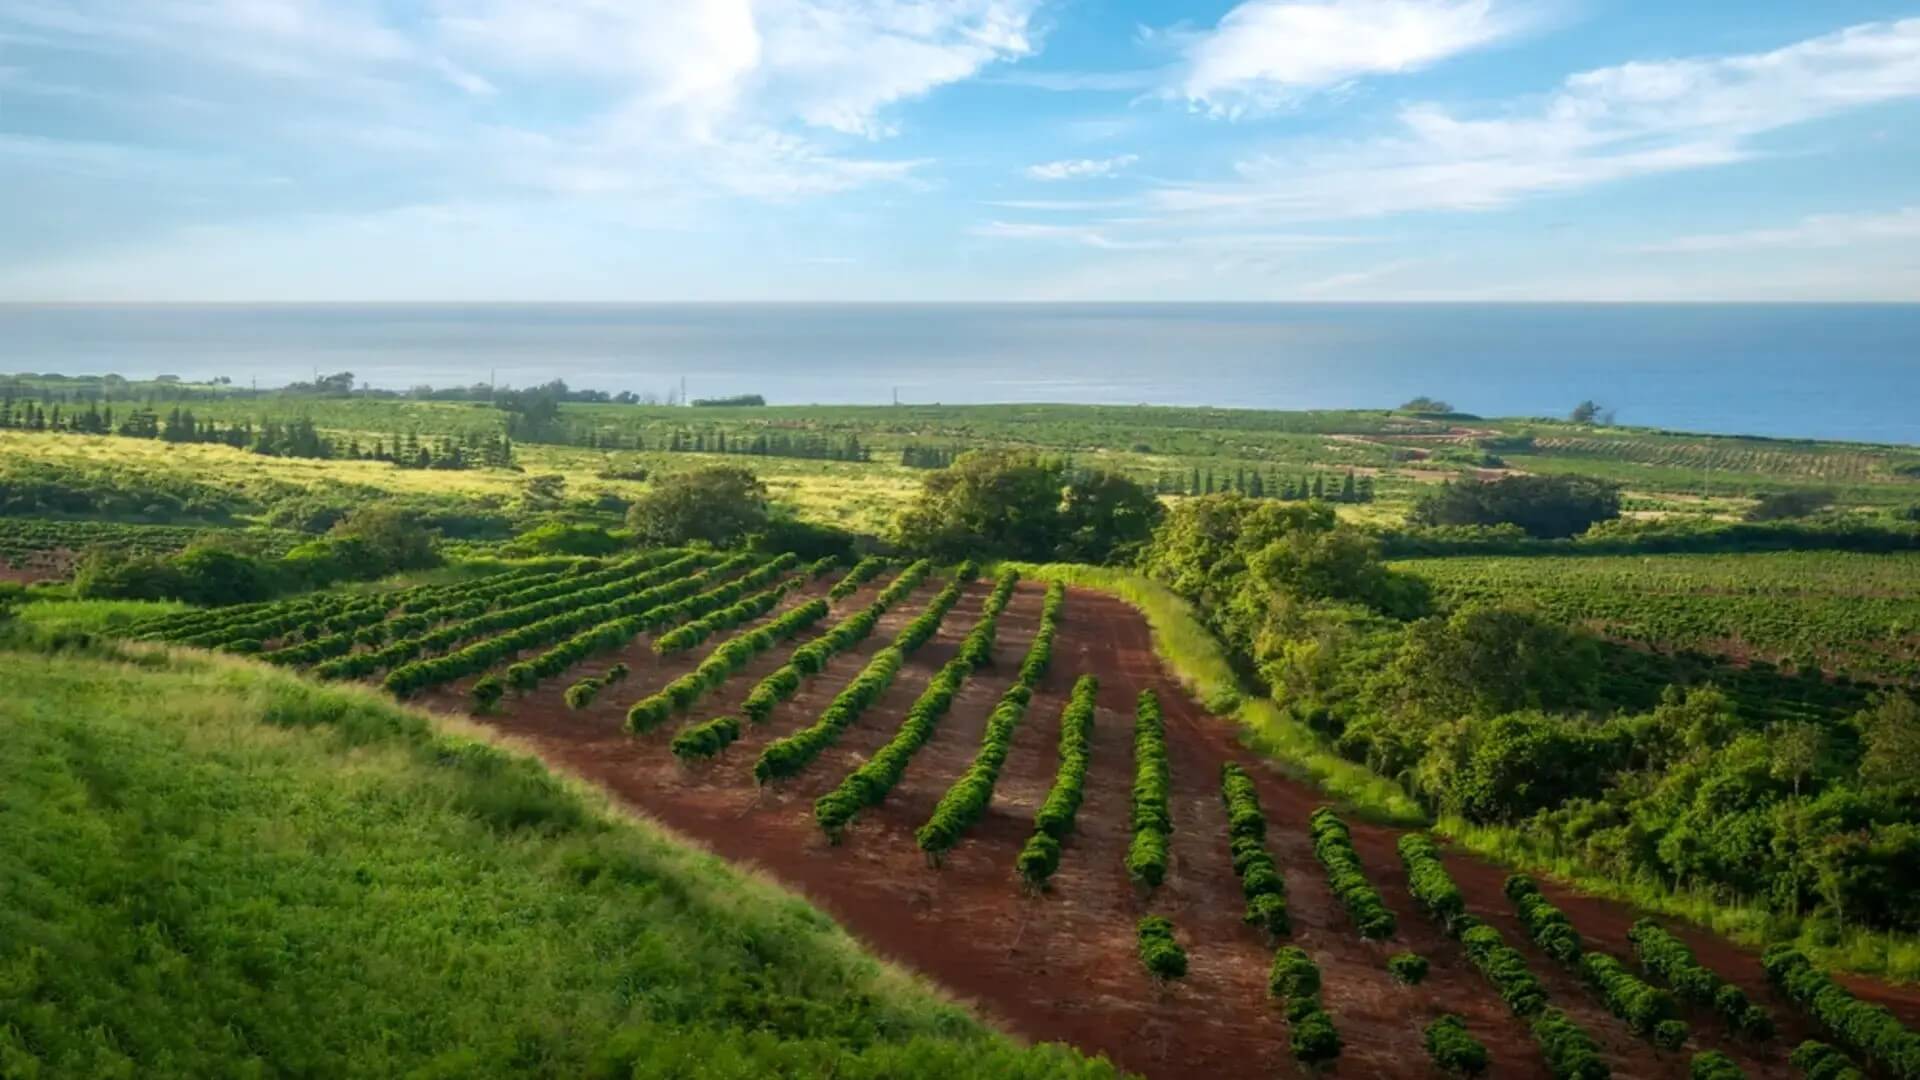 A coffee field near the ocean on Kauai